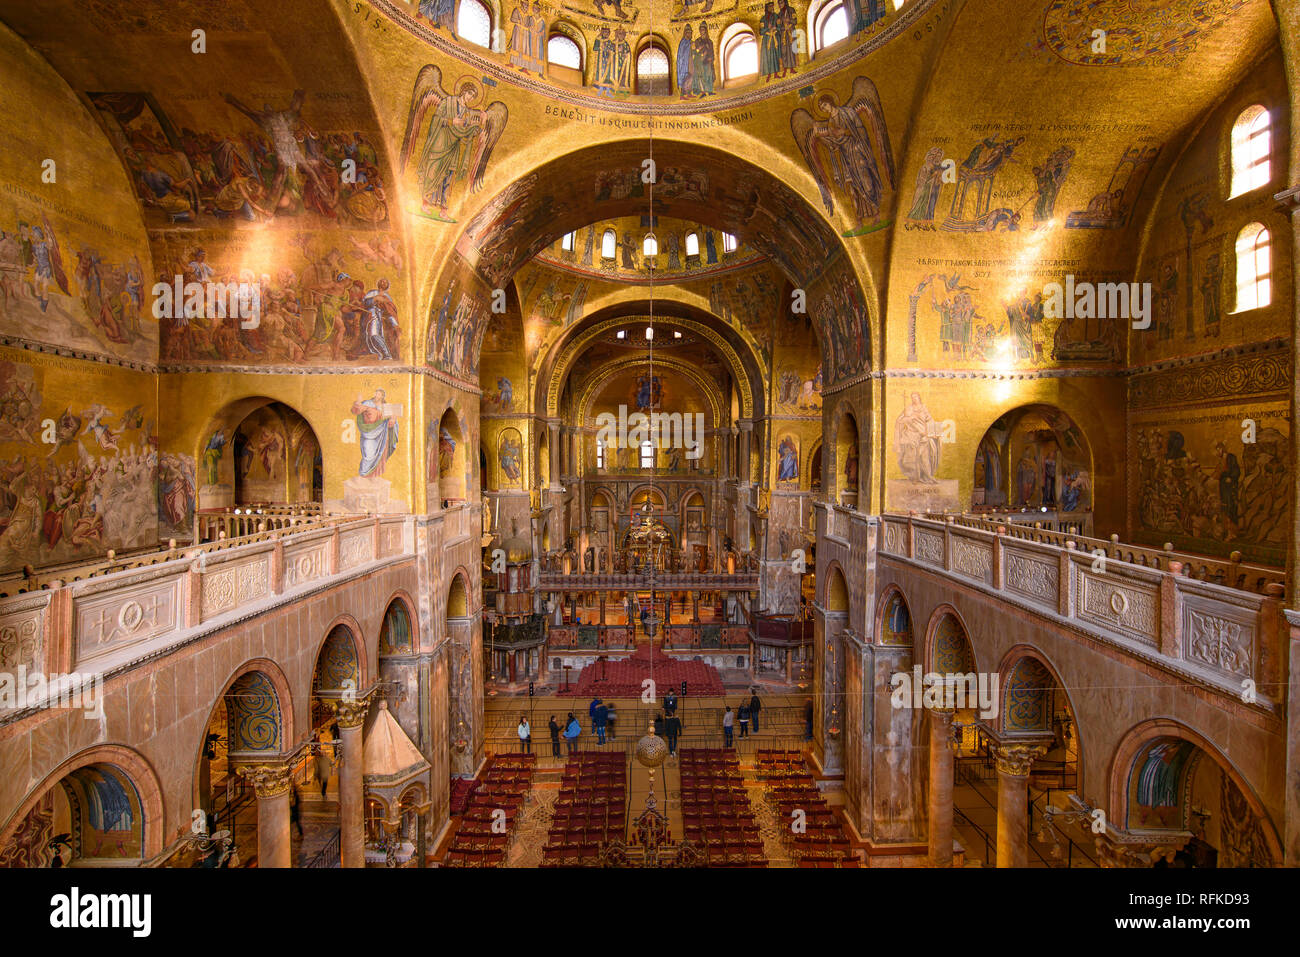 El arte de la decoración de mosaico en el interior de la Basílica de San Marcos, la iglesia de la catedral de Venecia, Italia Foto de stock